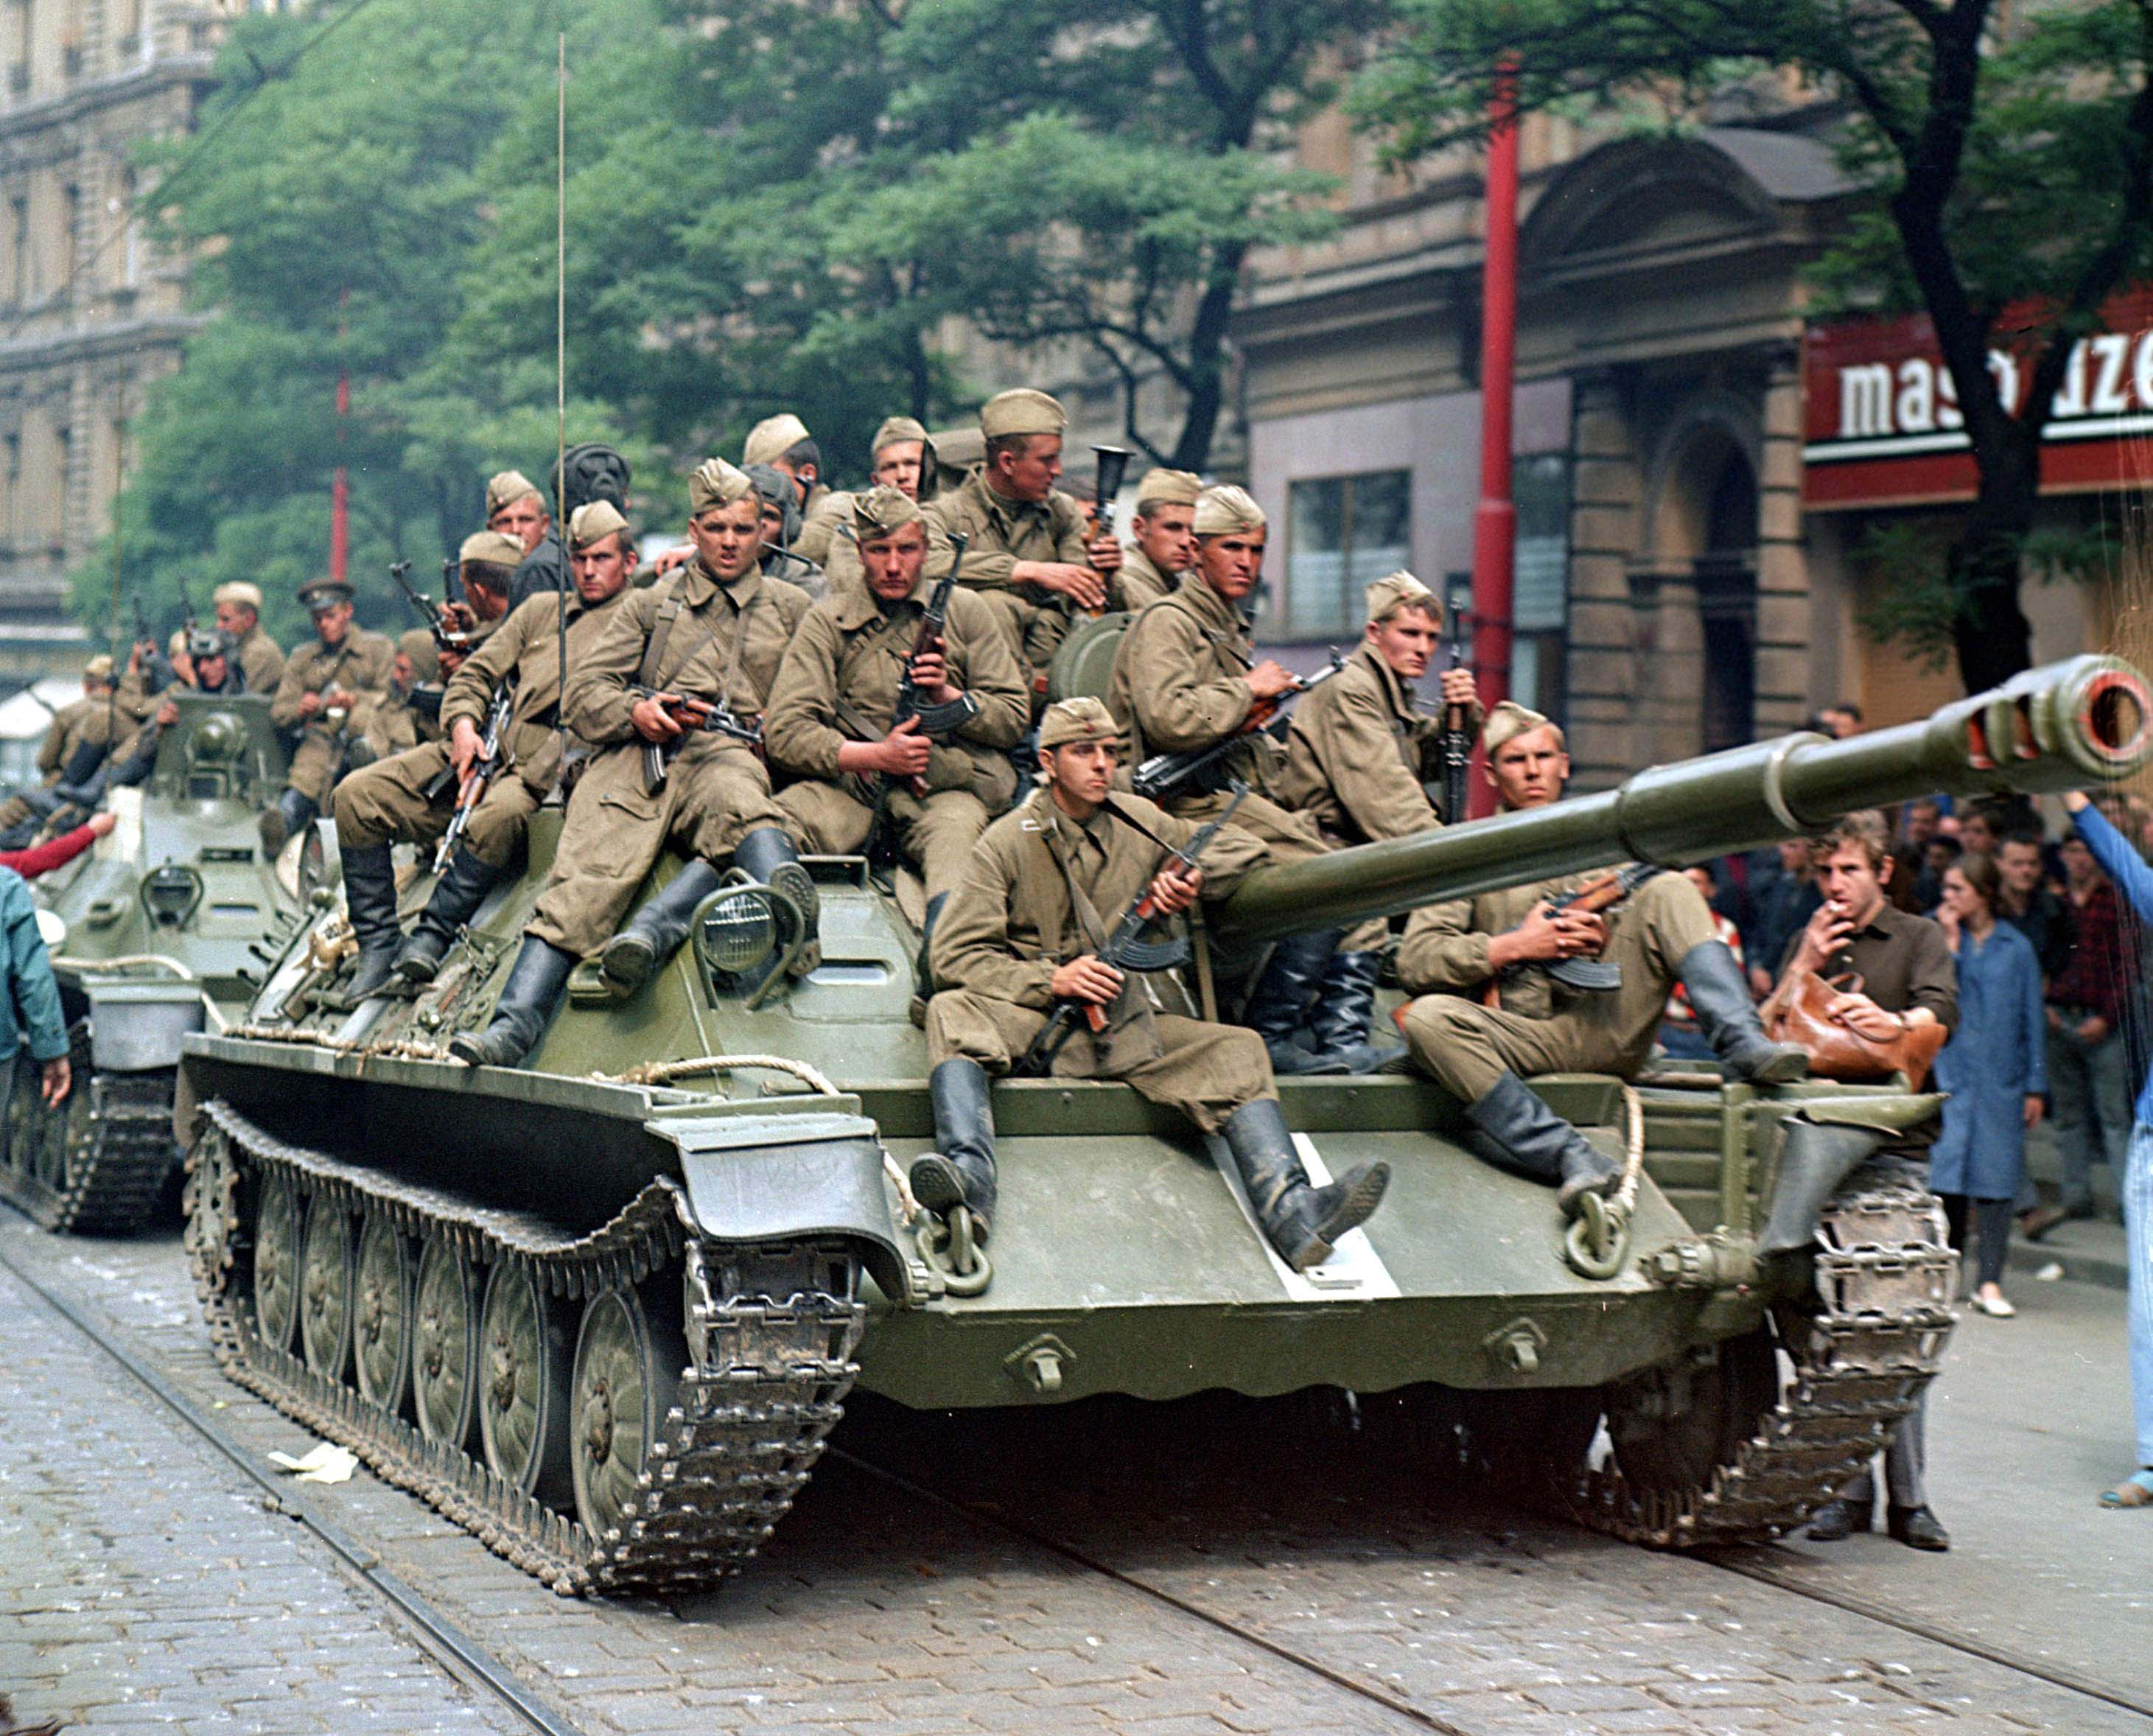 Πούτιν: Η αποστολή σοβιετικών αρμάτων μάχης στην Ουγγαρία και την Τσεχοσλοβακία ήταν λάθος